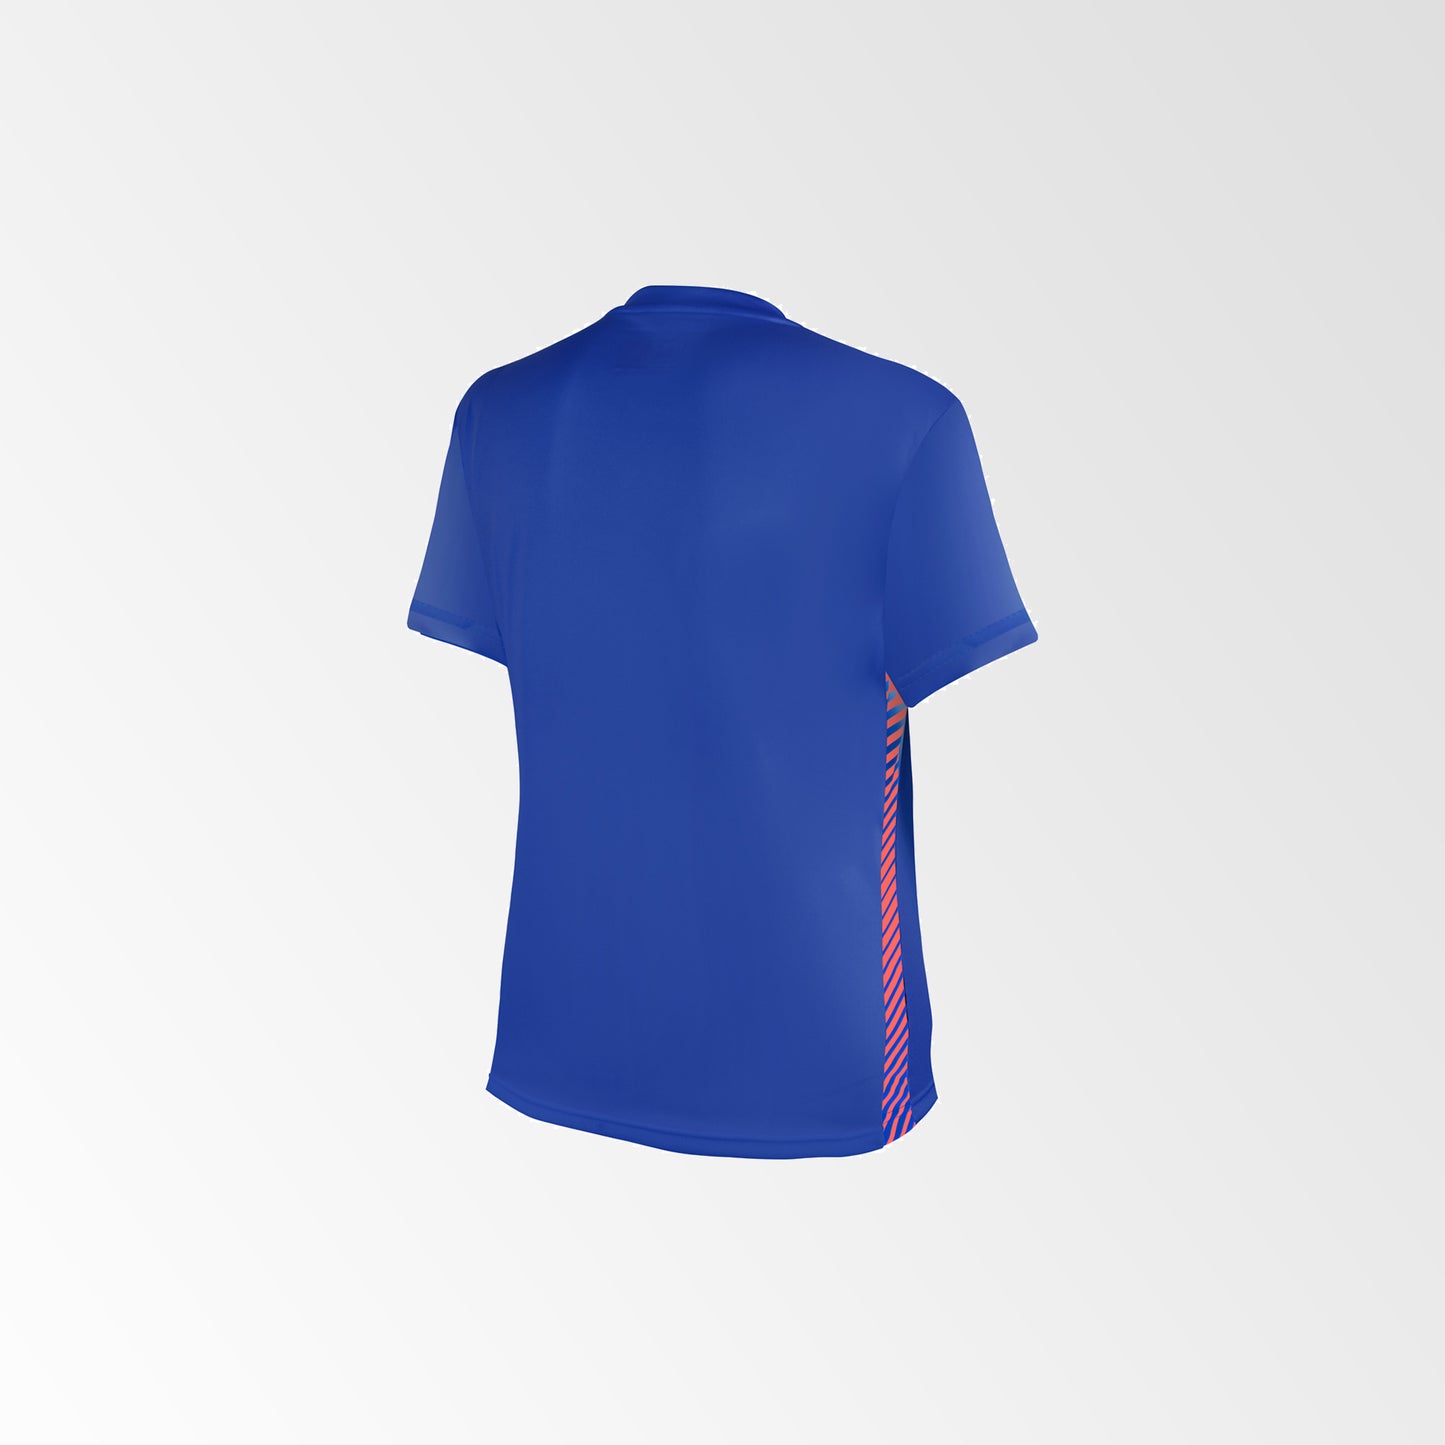 Camiseta de Futbol Mujer y Short Modelo Olympique Azul Rojo